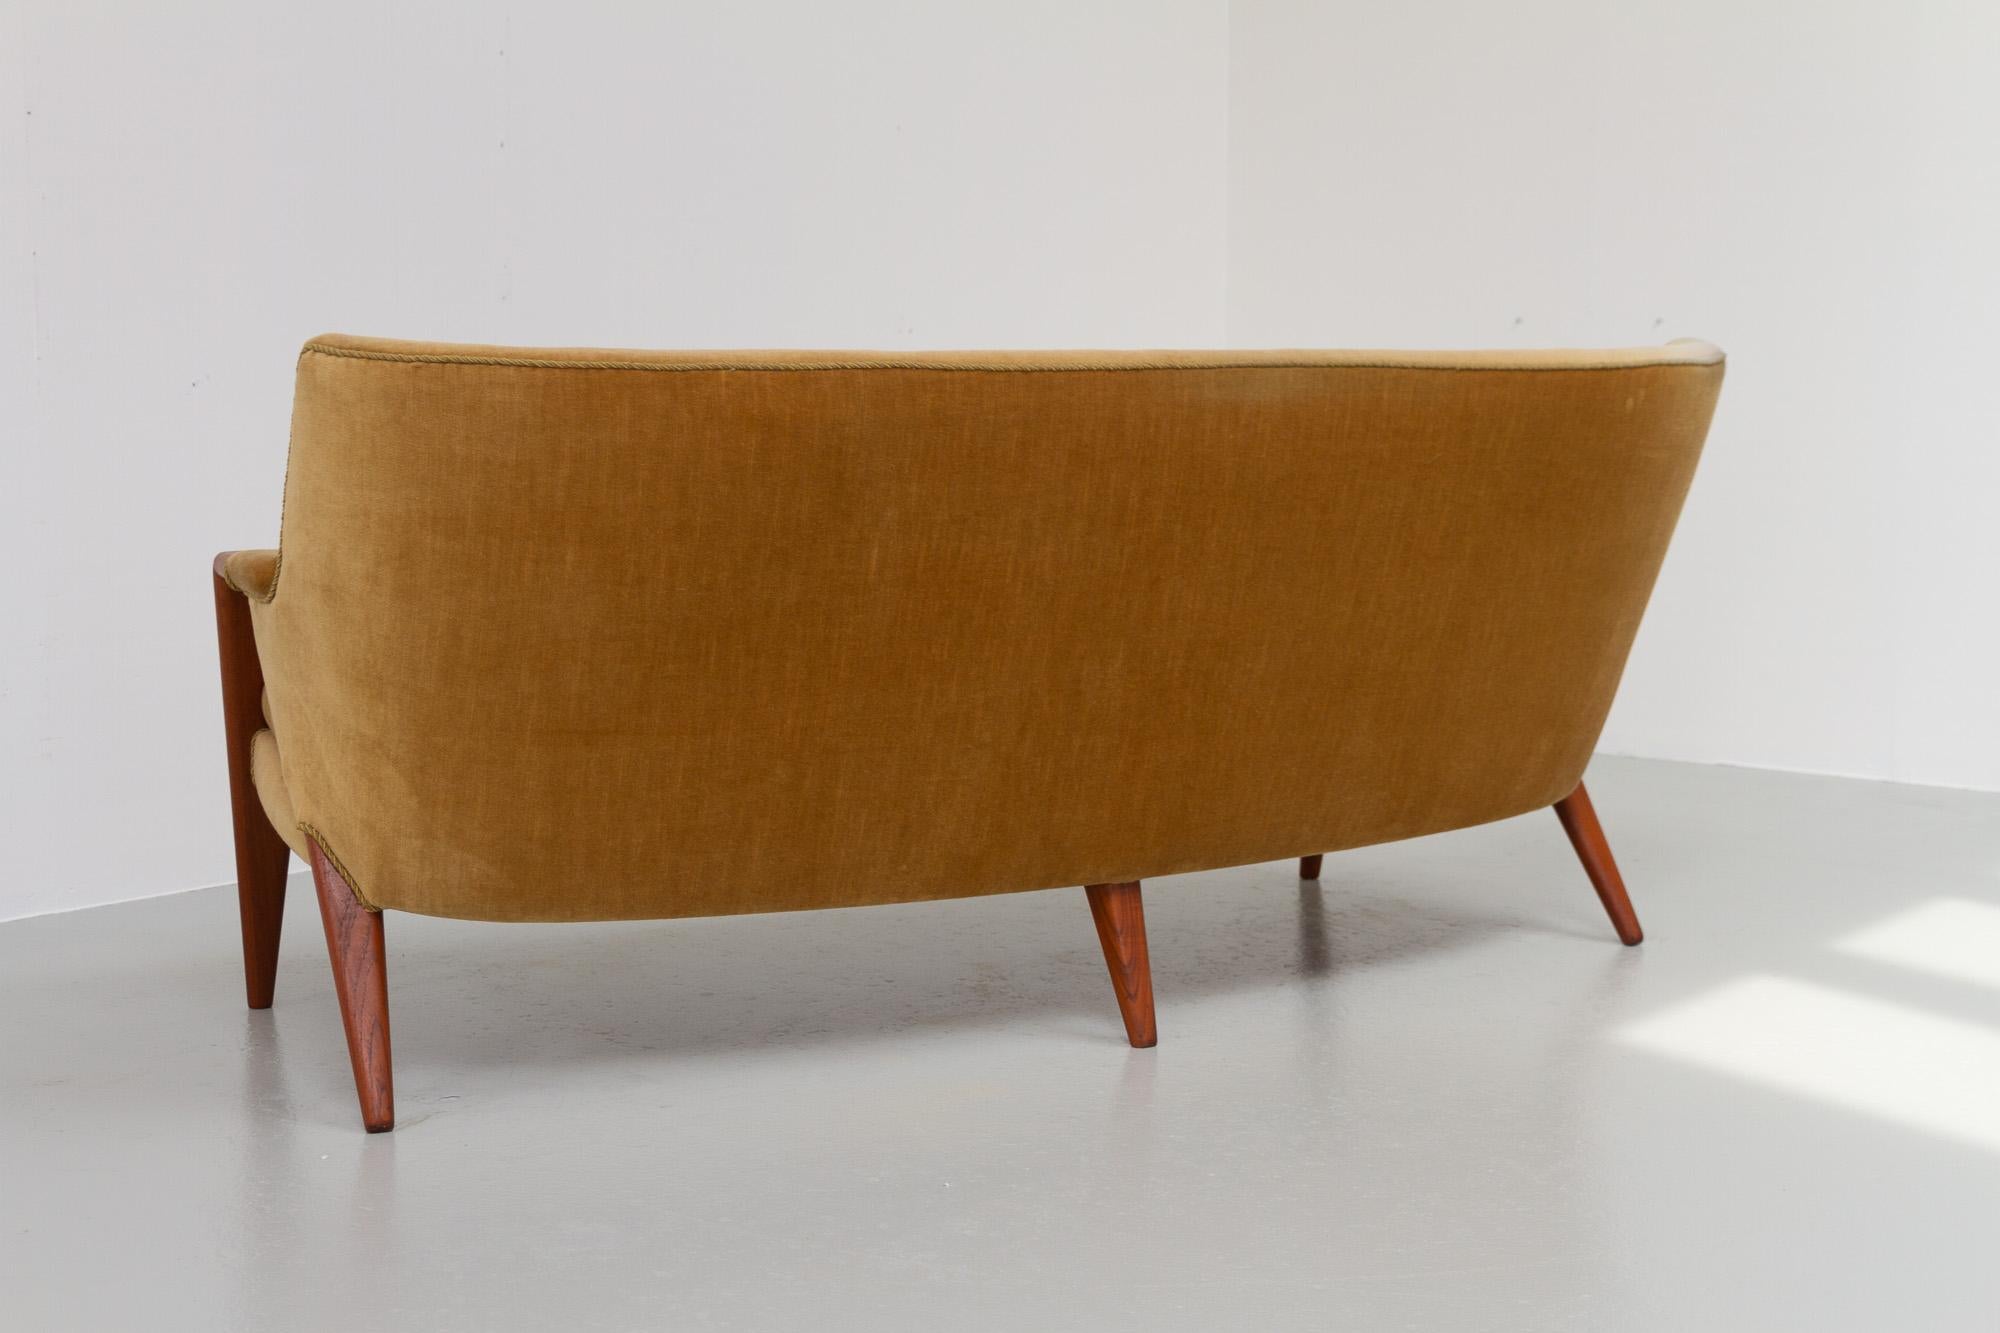 Danish Modern Banana Sofa and Chair by Kurt Olsen for Slagelse Møbelværk, 1950s For Sale 10